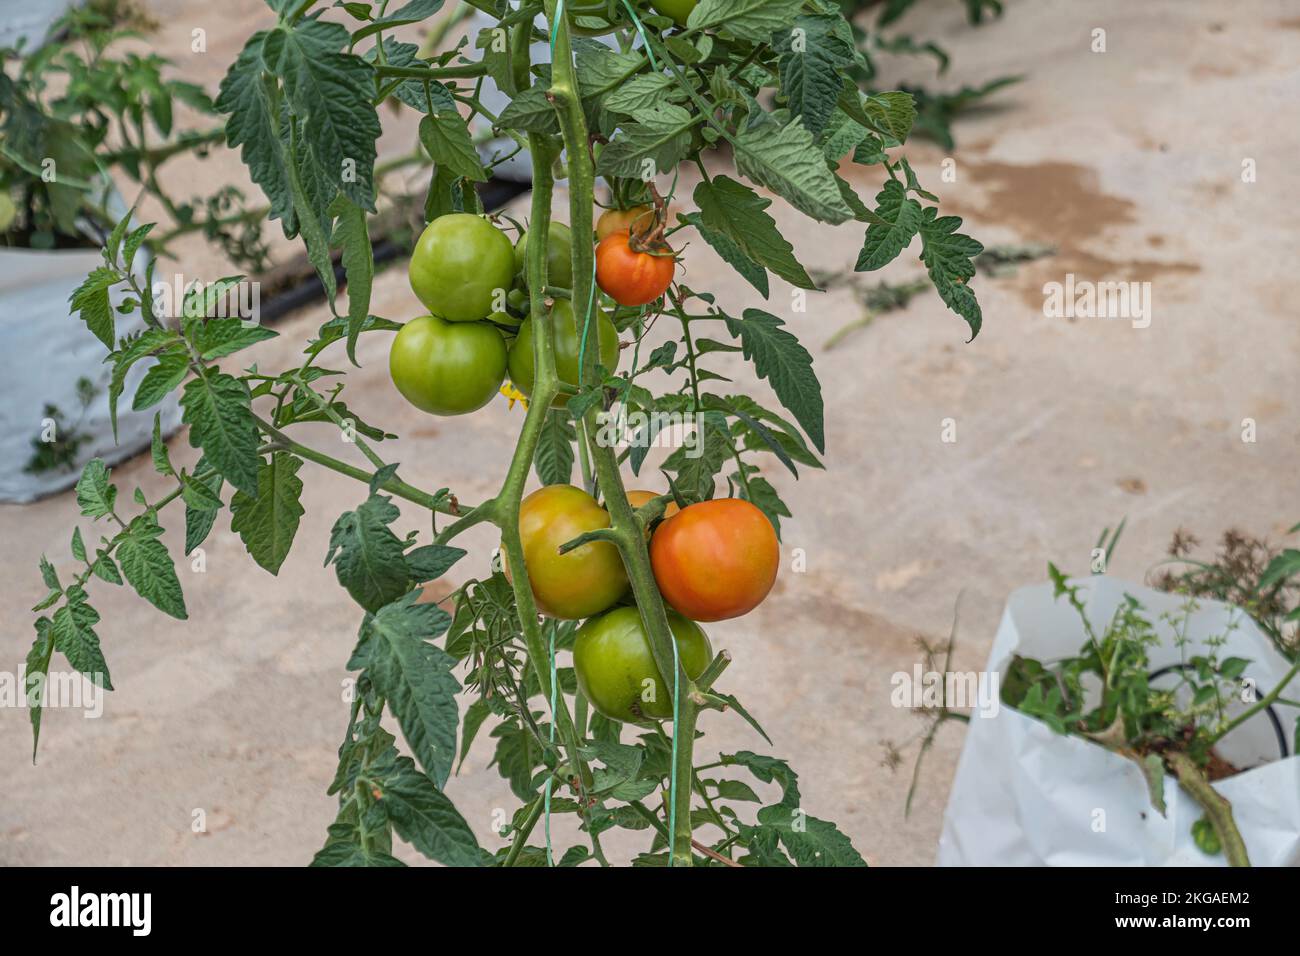 Auf einem Bauernhof in der kälteren Region Cameron Highlands, Malaysia, wachsen Tomaten in verschiedenen Reifungsstadien auf Reben. Stockfoto